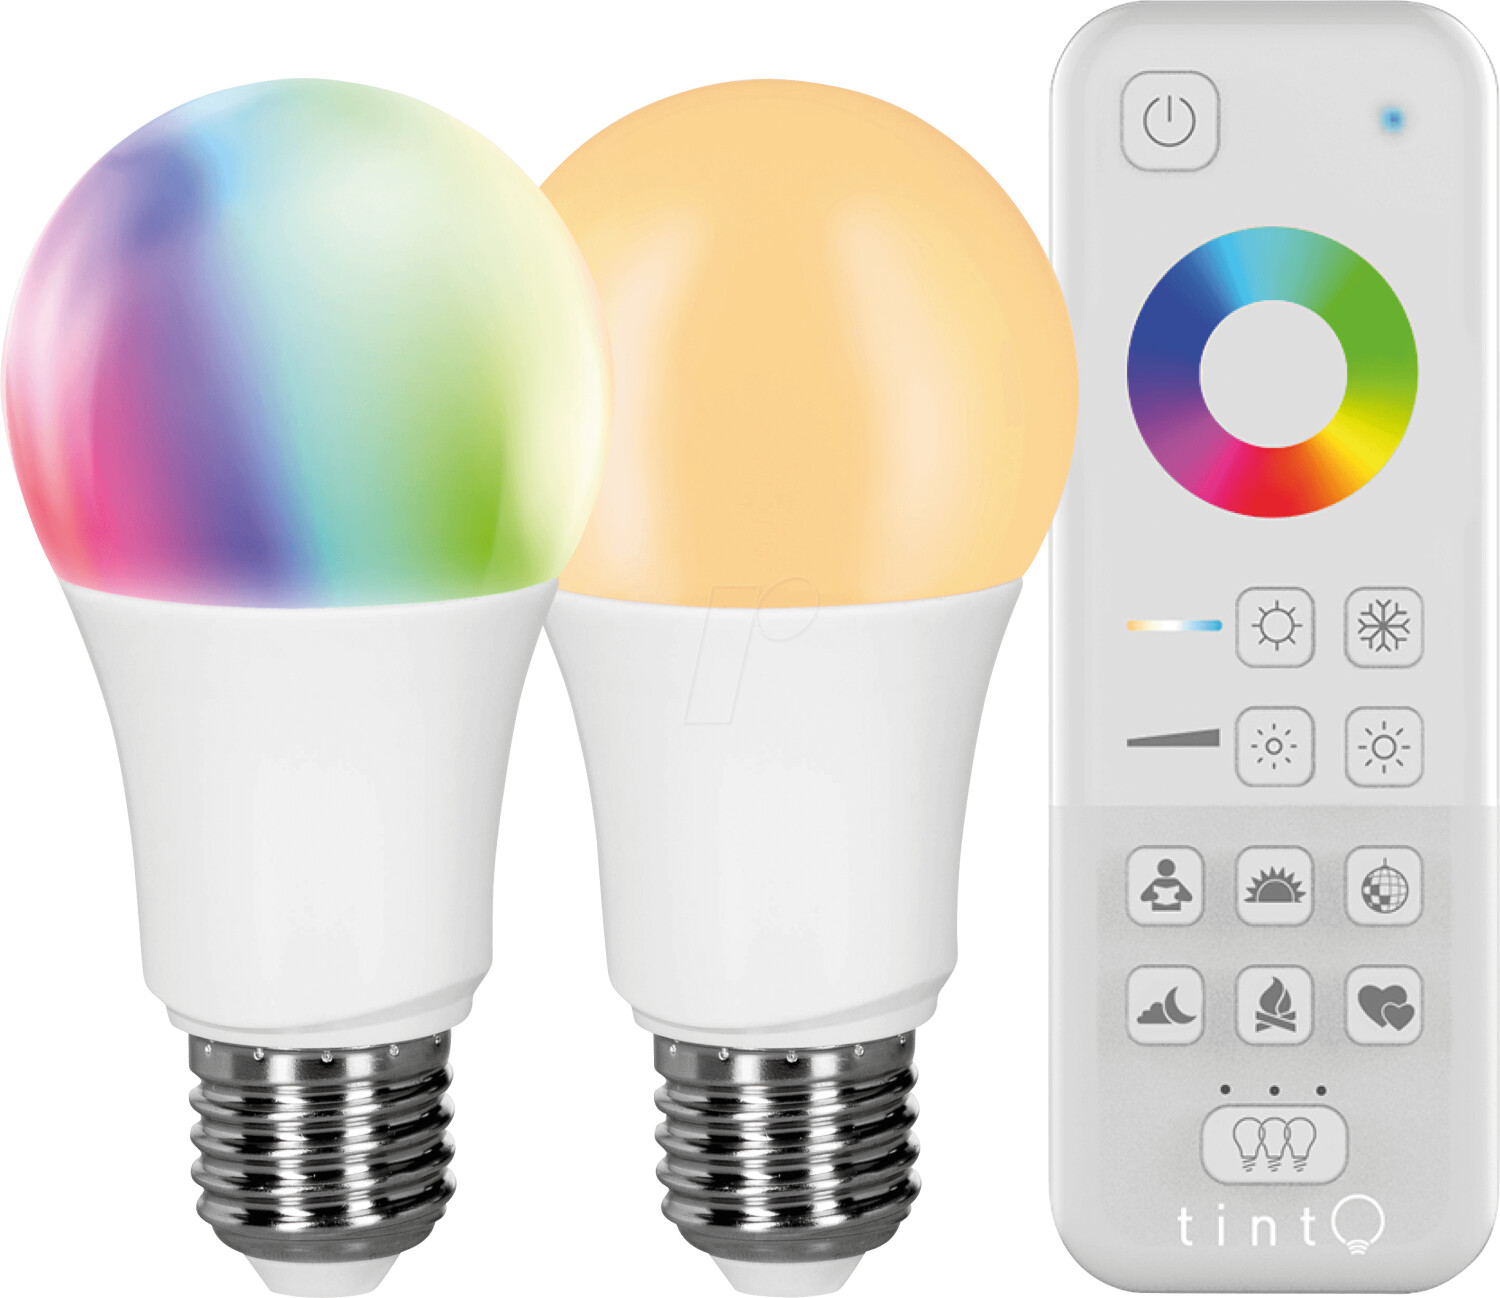 Müller-Licht tint LED white+color E27 Starter Set (404013)